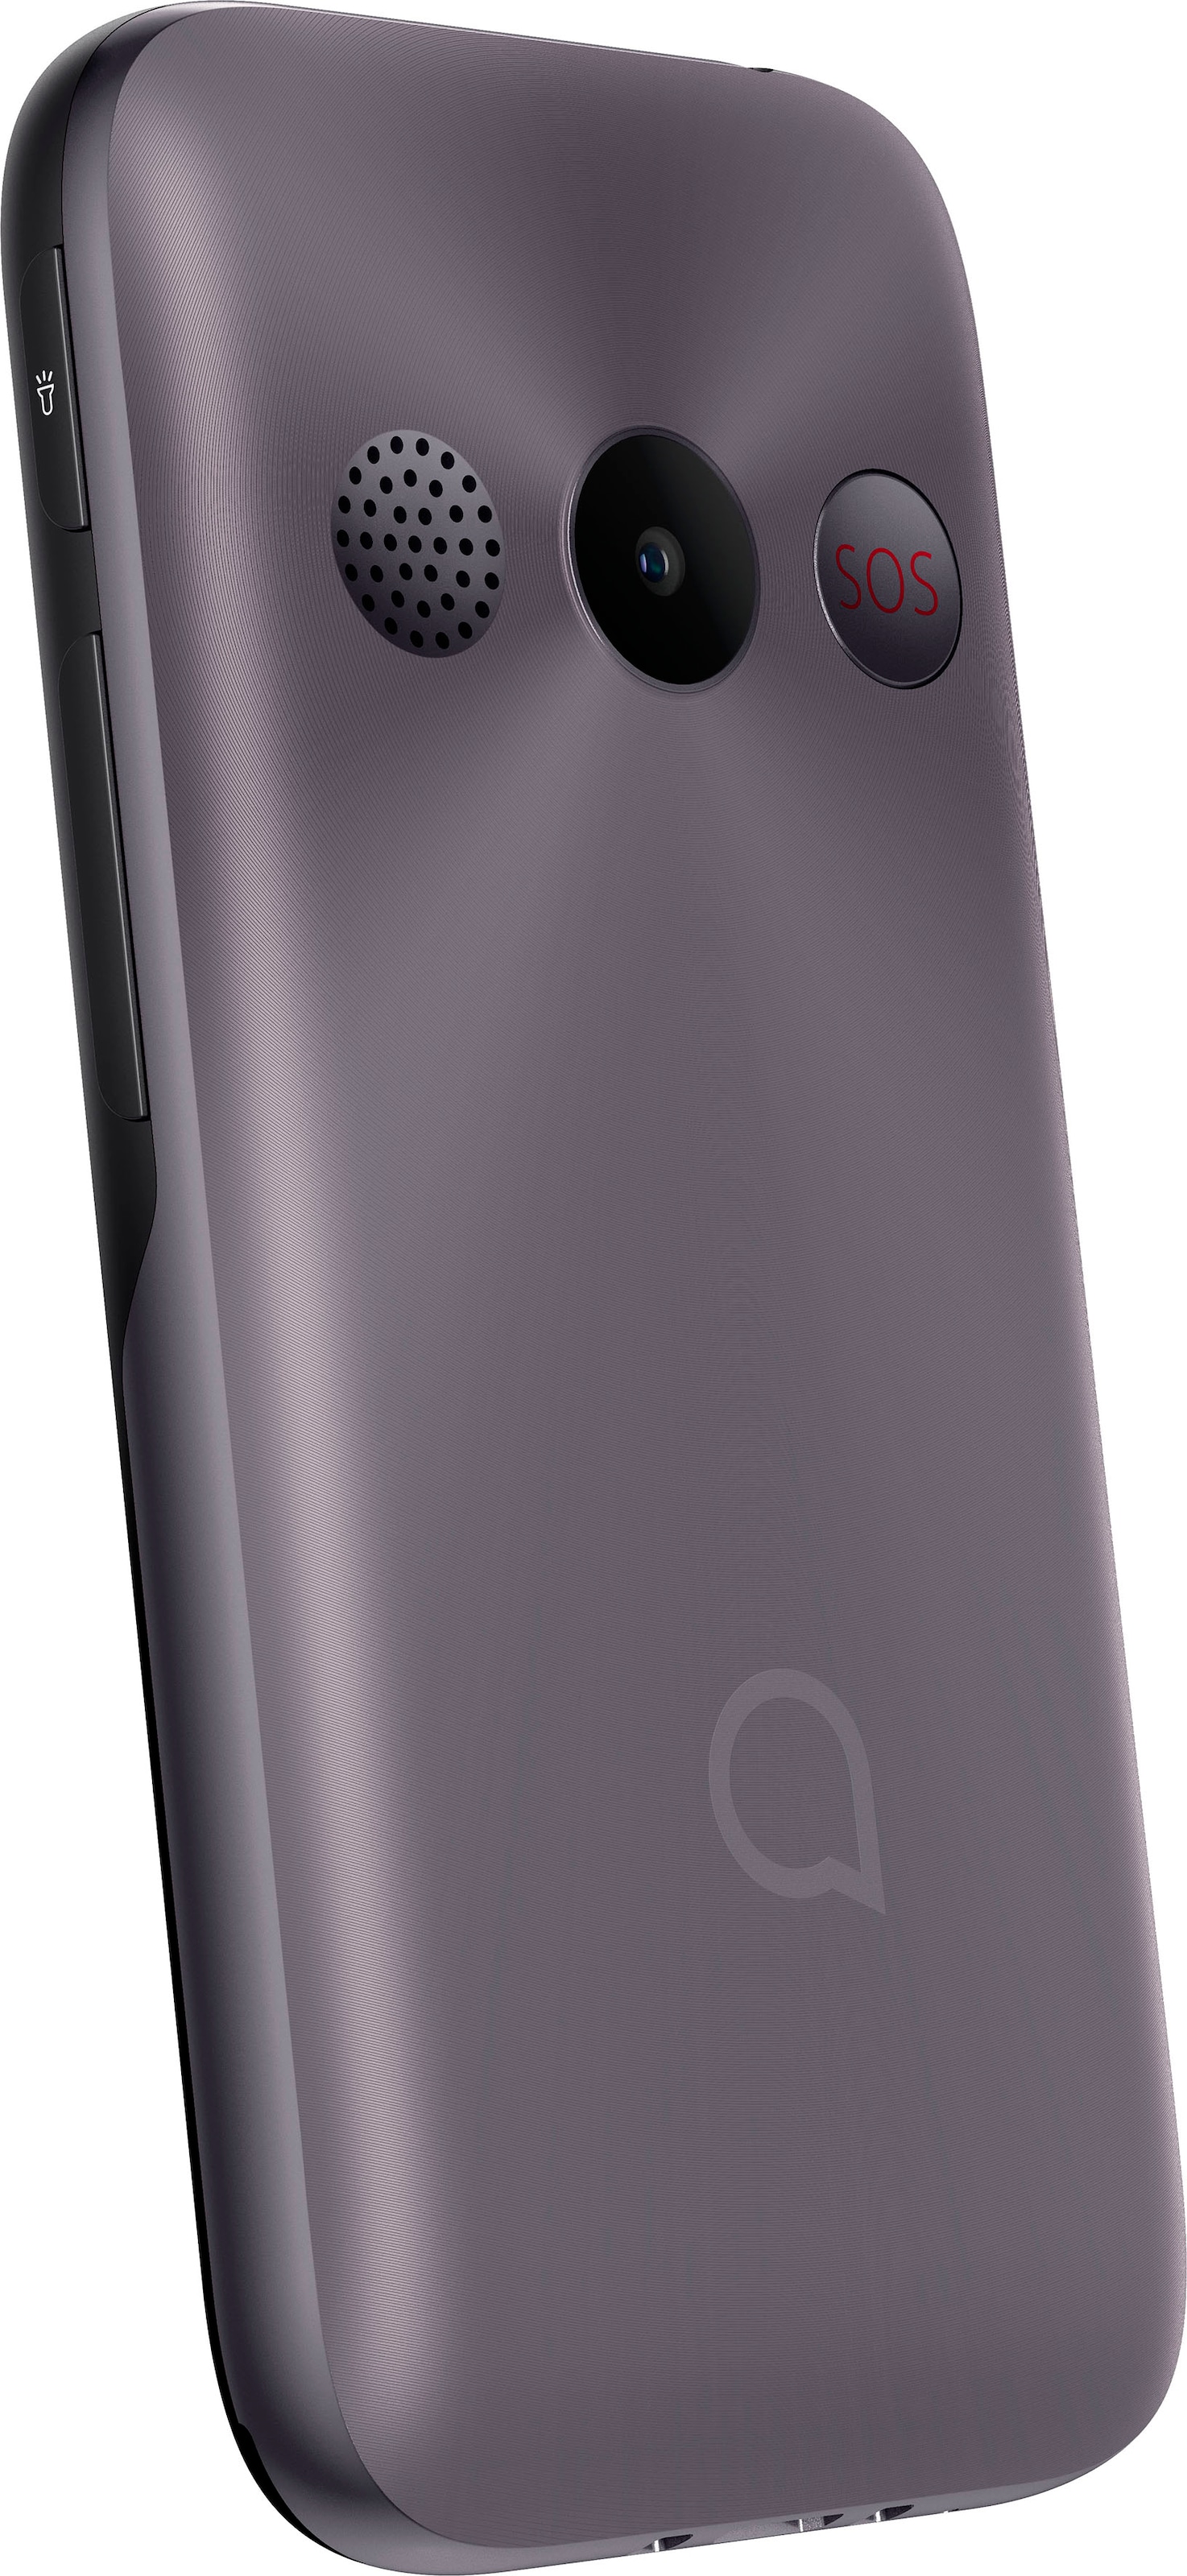 Alcatel Handy »2020«, Metallic Gray, 6,10 cm/2,4 Zoll auf Rechnung kaufen